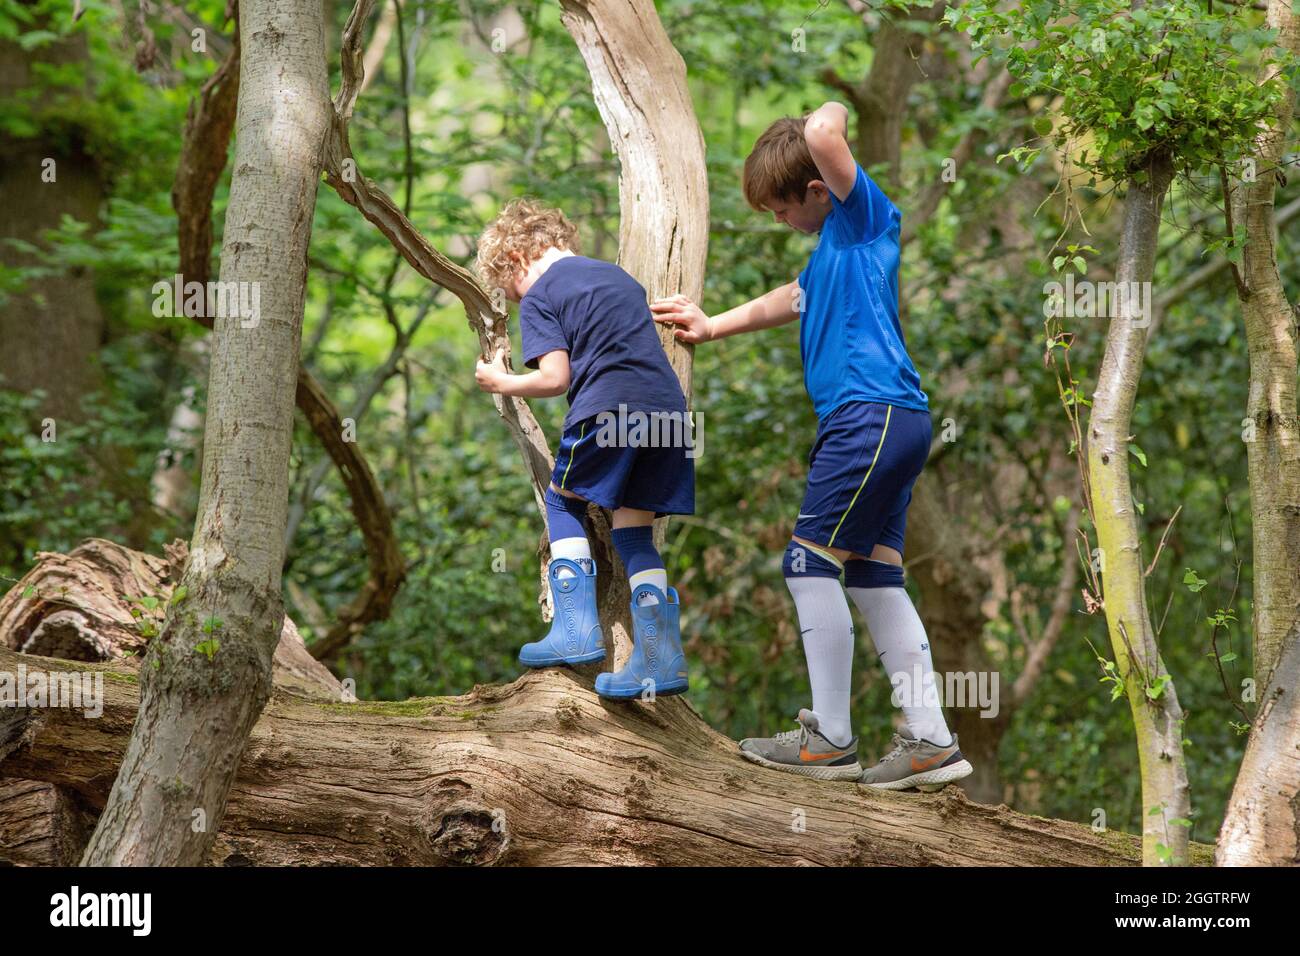 Deux jeunes garçons, frères, frères et sœurs, escalade, clambering, équilibre sur un tronc d'arbre mort tombé dans la forêt. Découverte et découverte de la nature partagée. Rura Banque D'Images